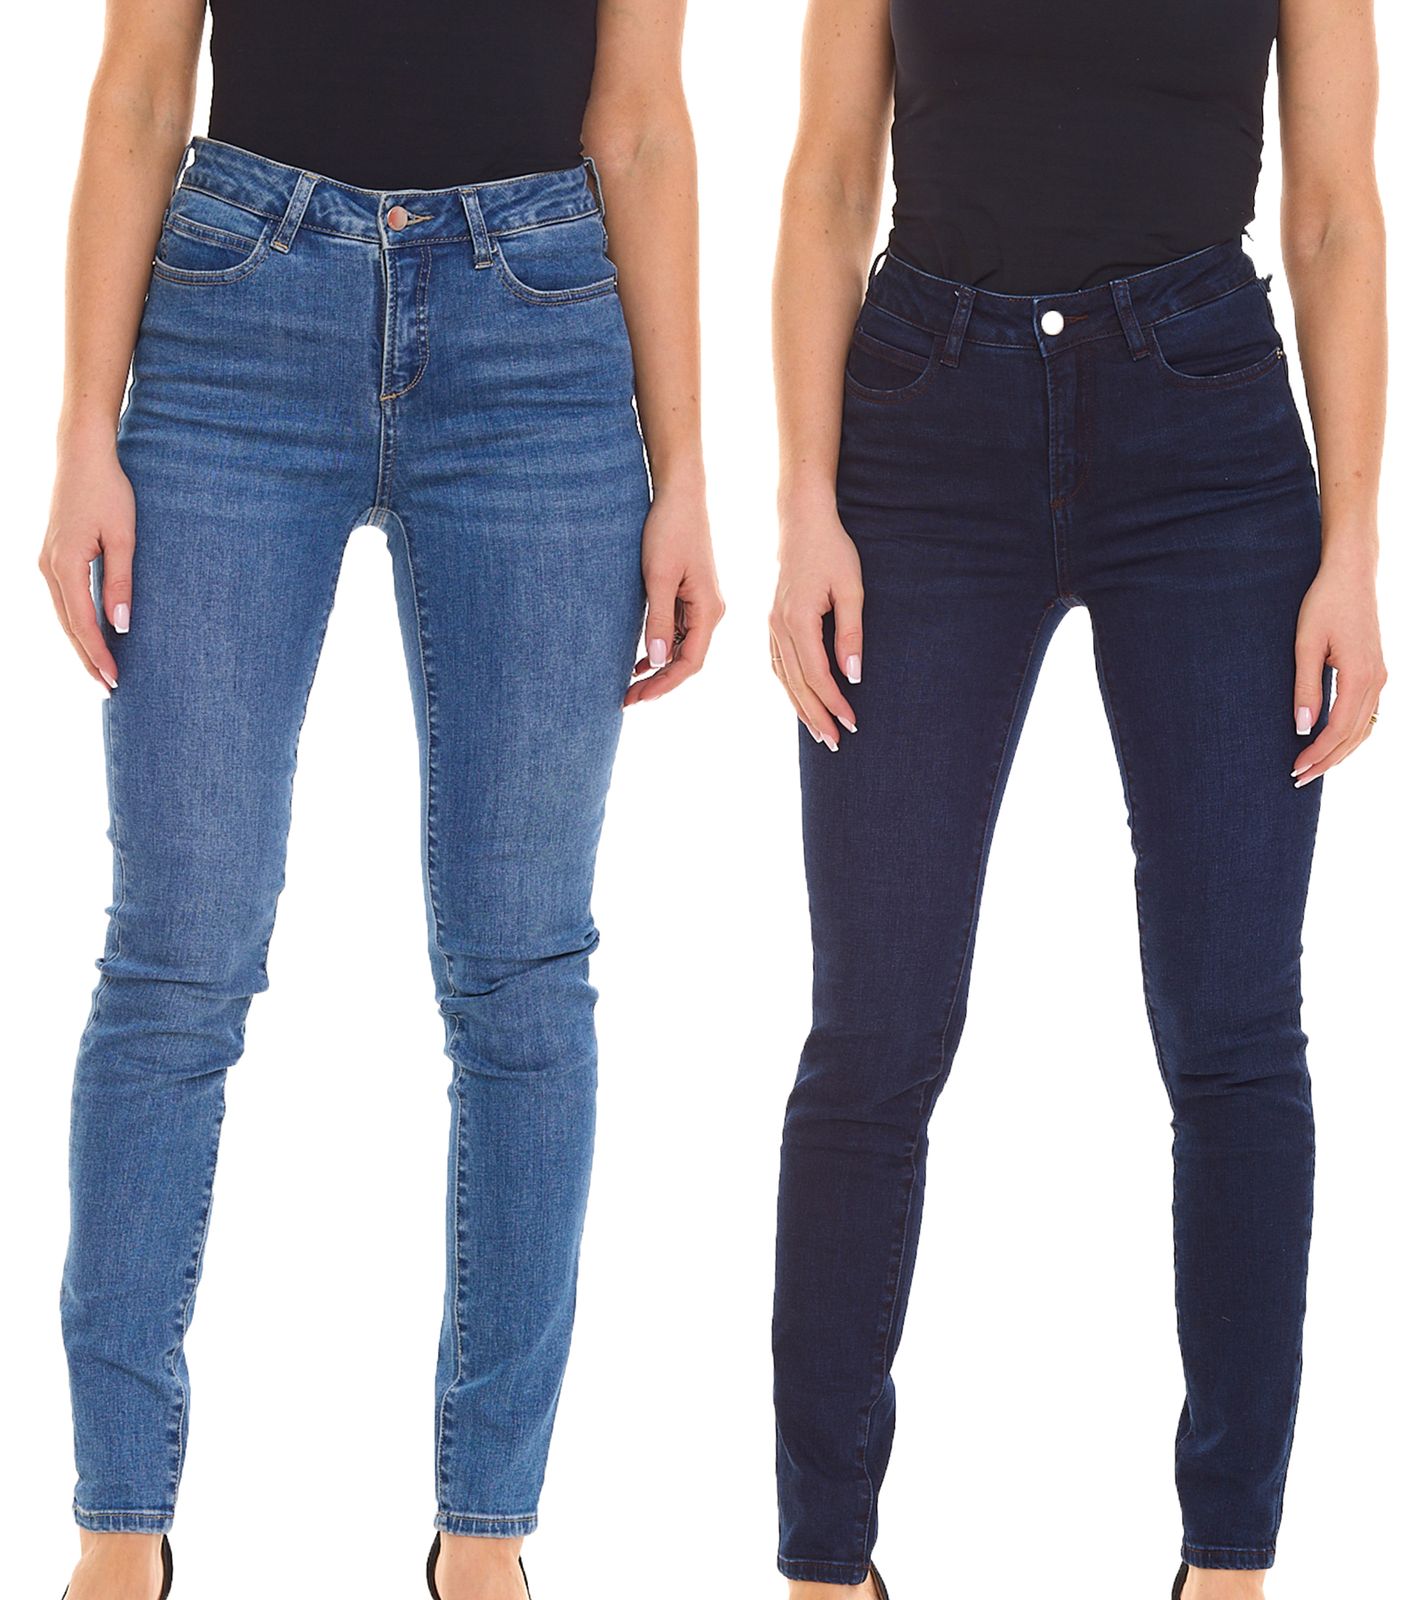 HECHTER PARIS Damen Skinny-Jeans Baumwoll-Hose im 5-Pocket-Style Dunkelblau oder Hellblau von HECHTER PARIS